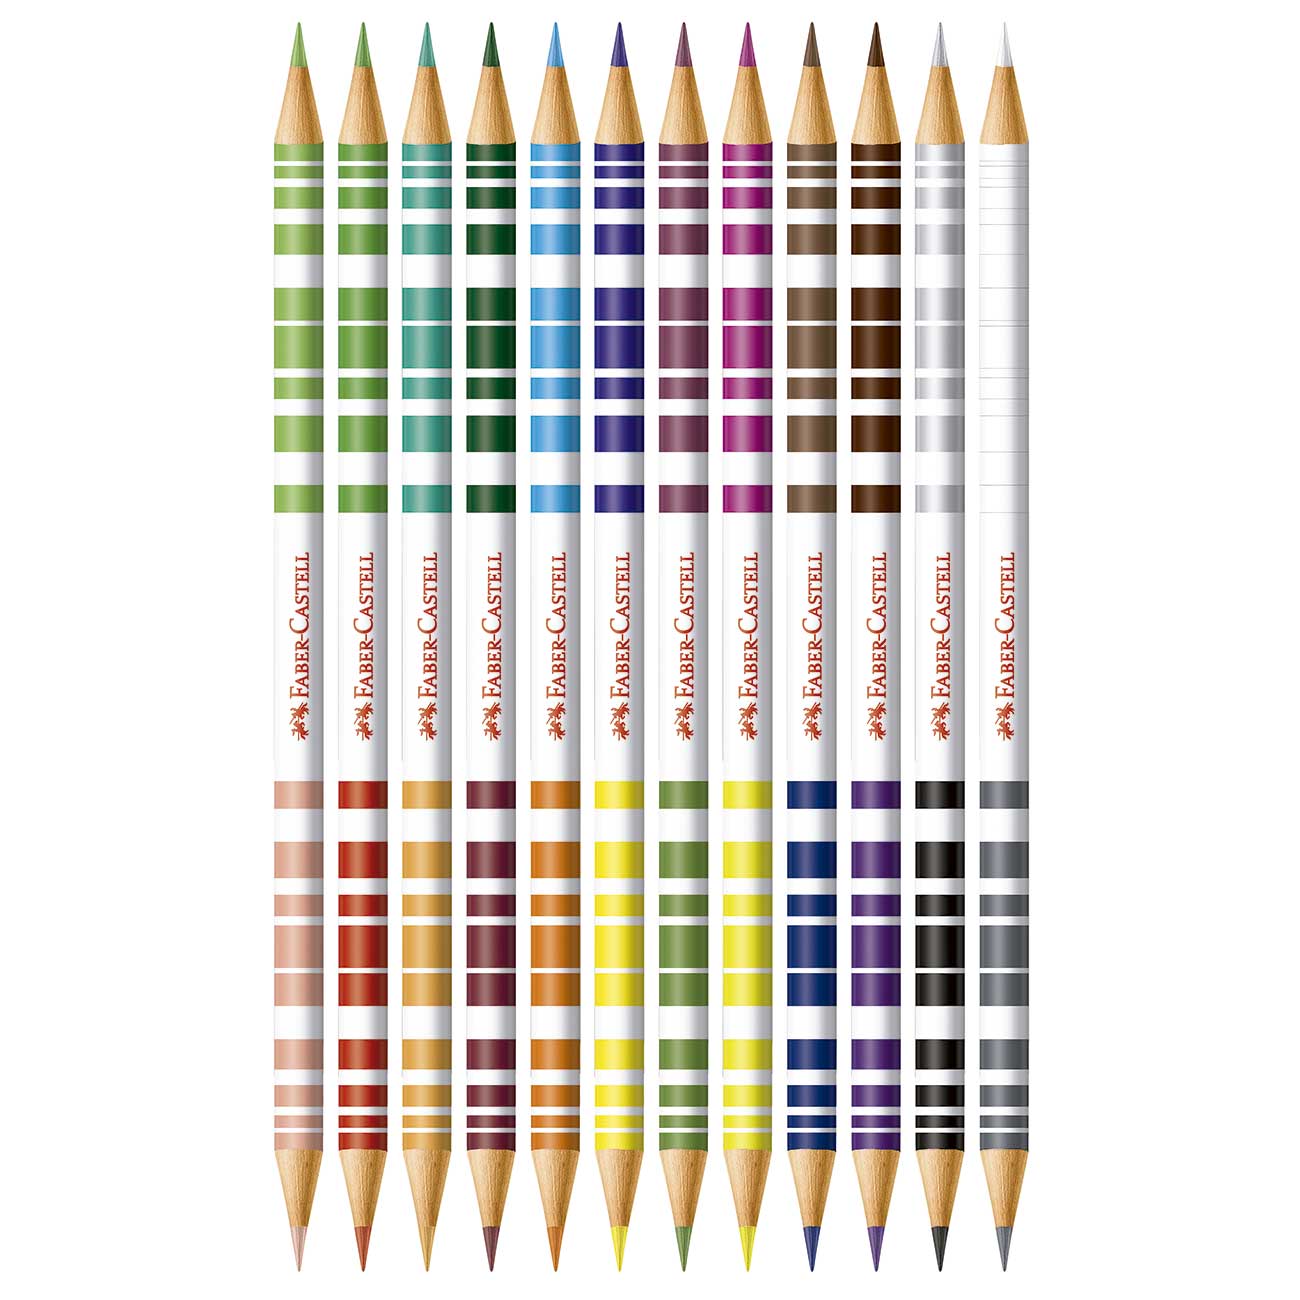 Lpis Cor Bicolor Faber-Castell 12 Pares/24 cores Kit Escolar